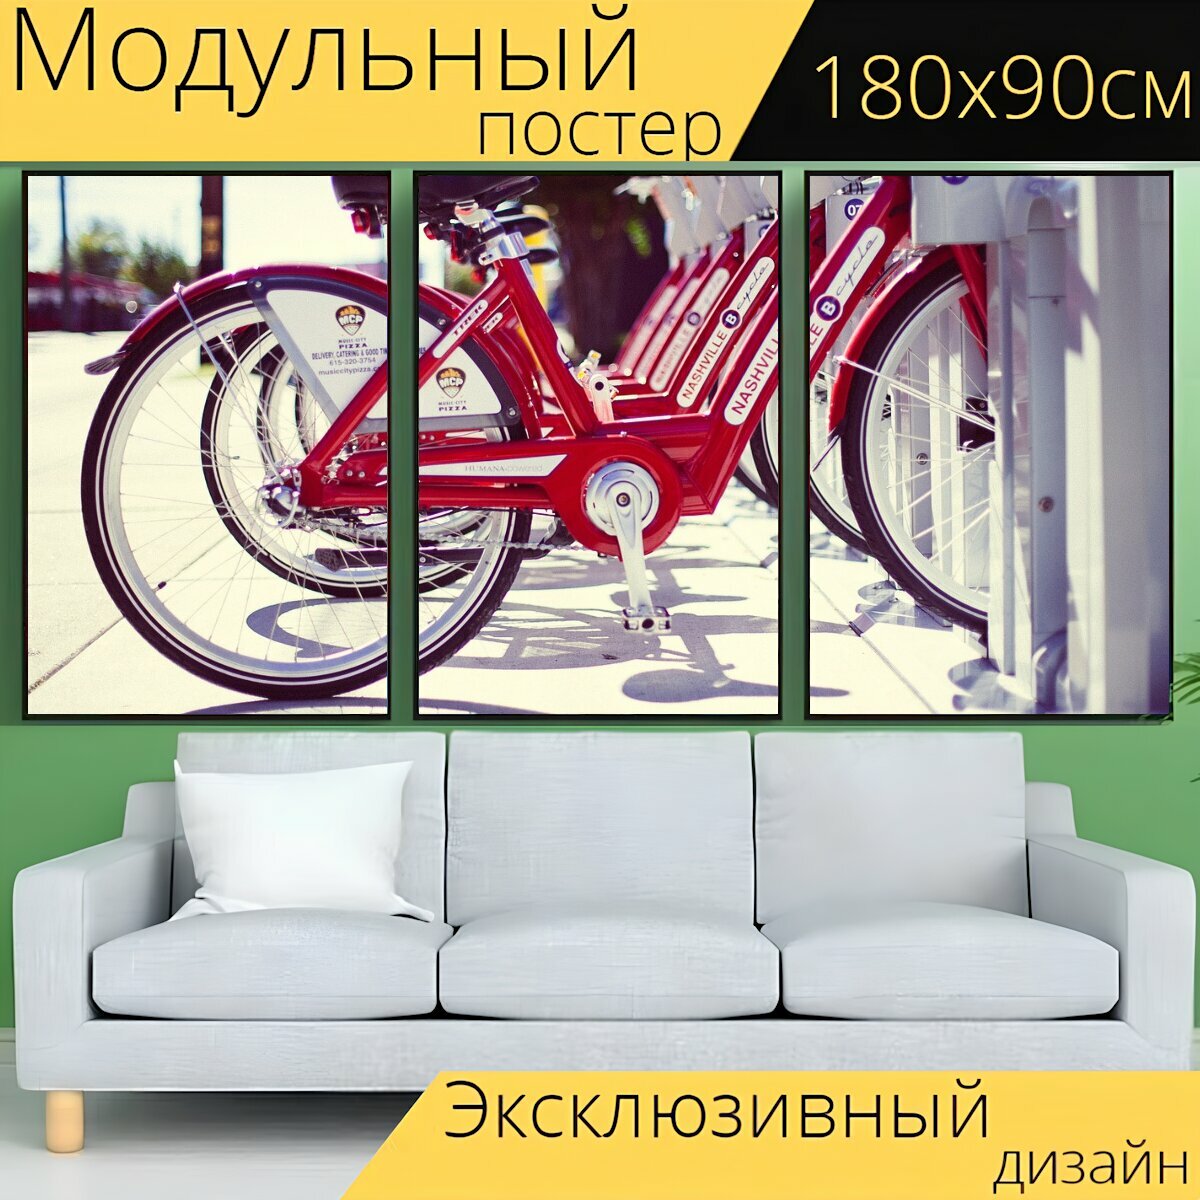 Модульный постер "Прокат велосипедов, велосипеды, красный" 180 x 90 см. для интерьера